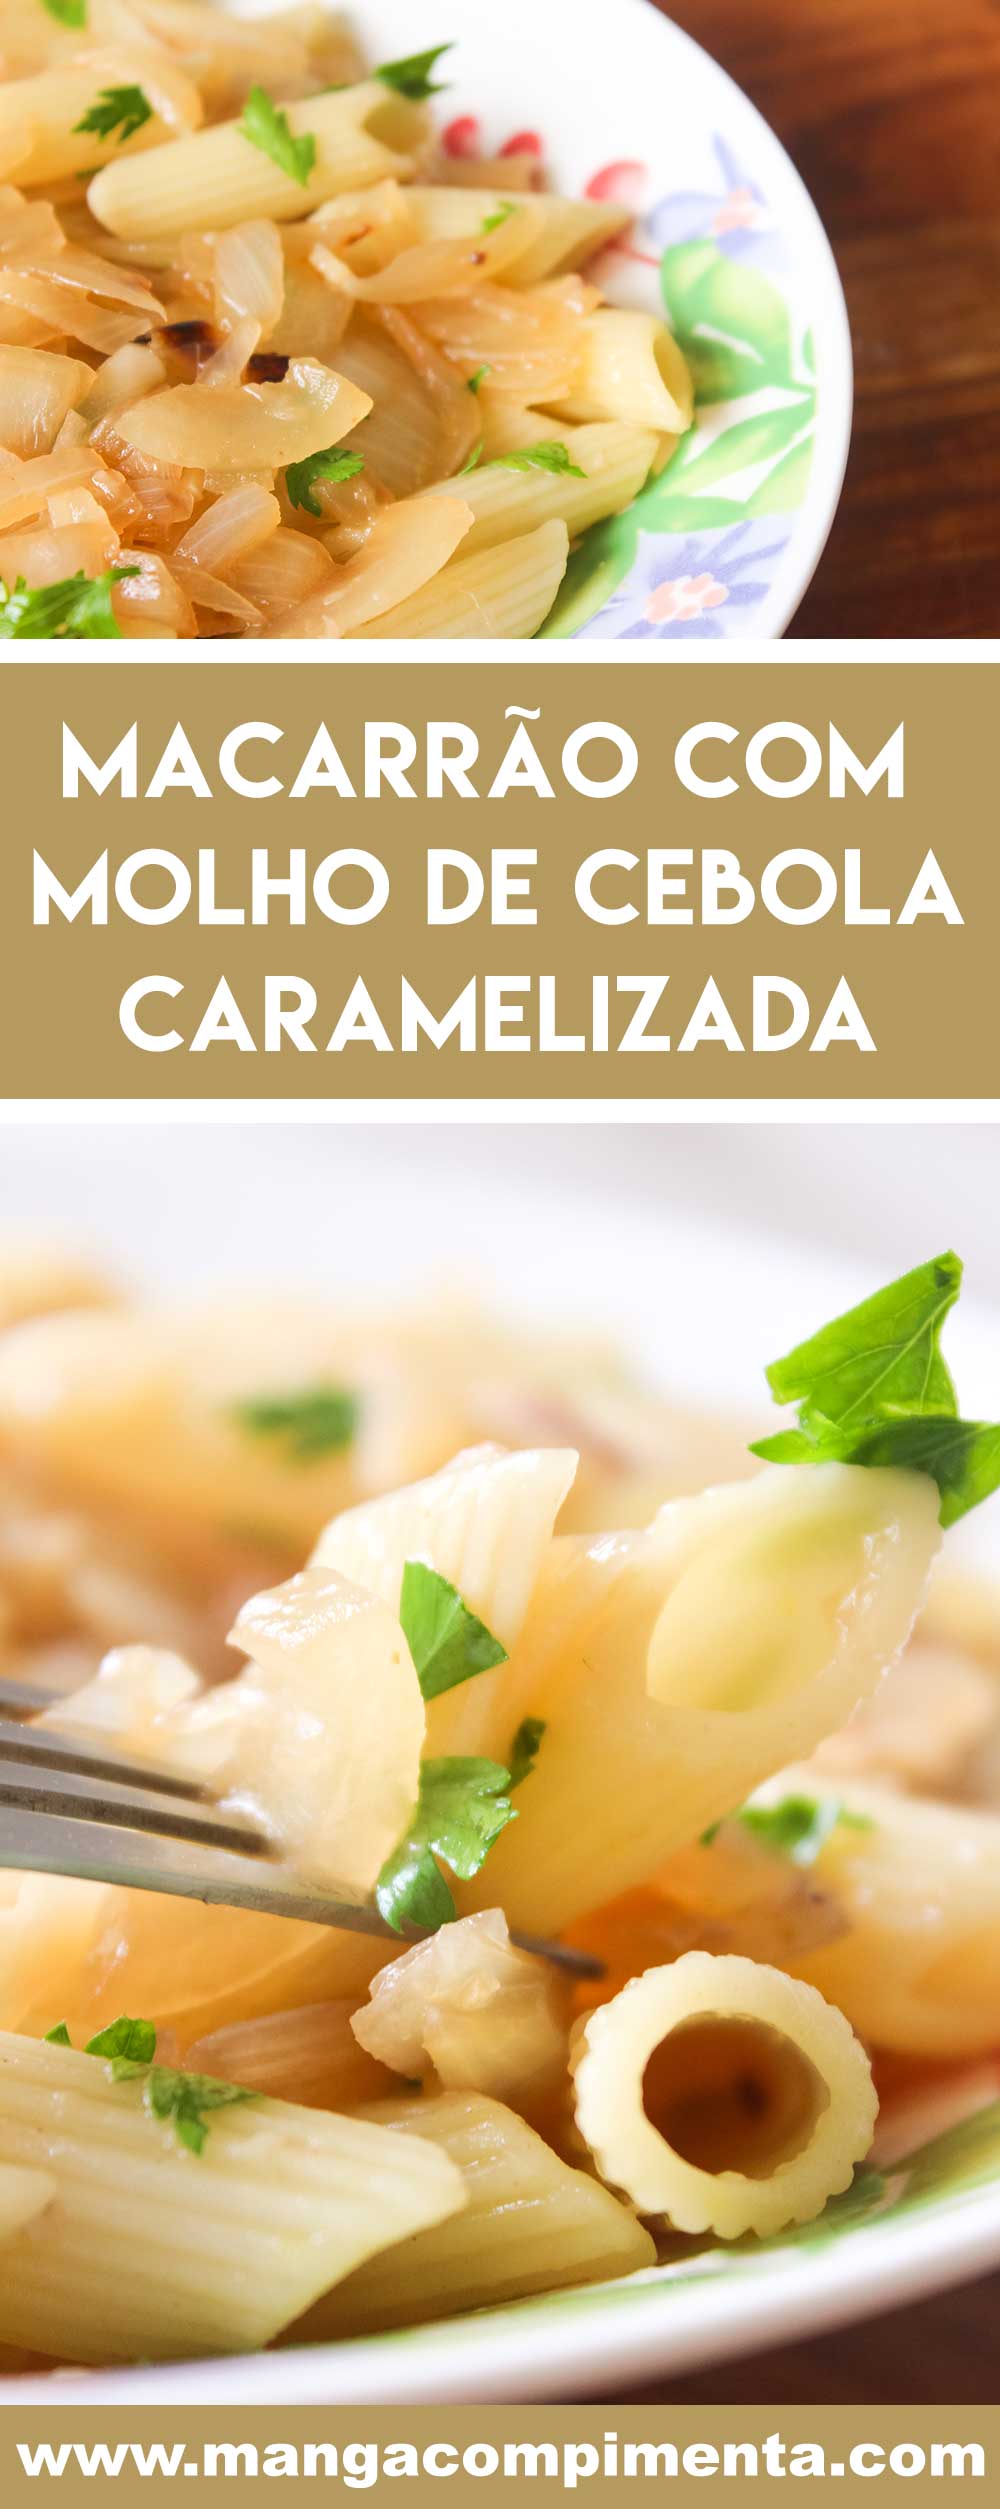 Receita de Macarrão com Molho de Cebola Caramelizada - faça esse prato delicioso para a família em dias frescos.